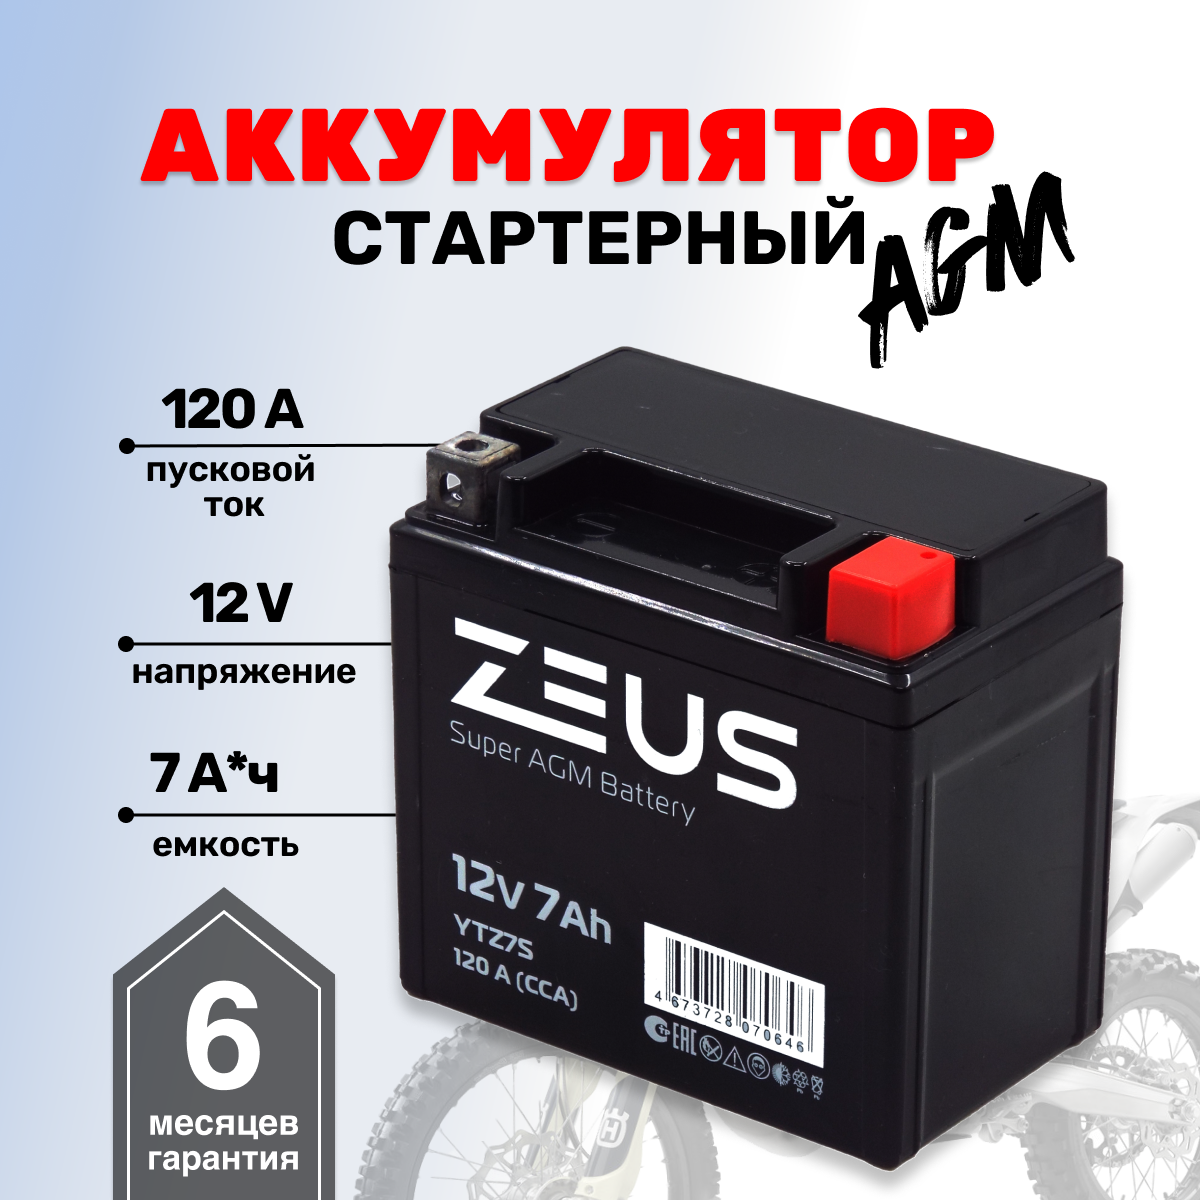 Аккумулятор ZEUS SUPER AGM YTZ7S (12V/7Ah) (UTZ7S, СТ 1207.2)